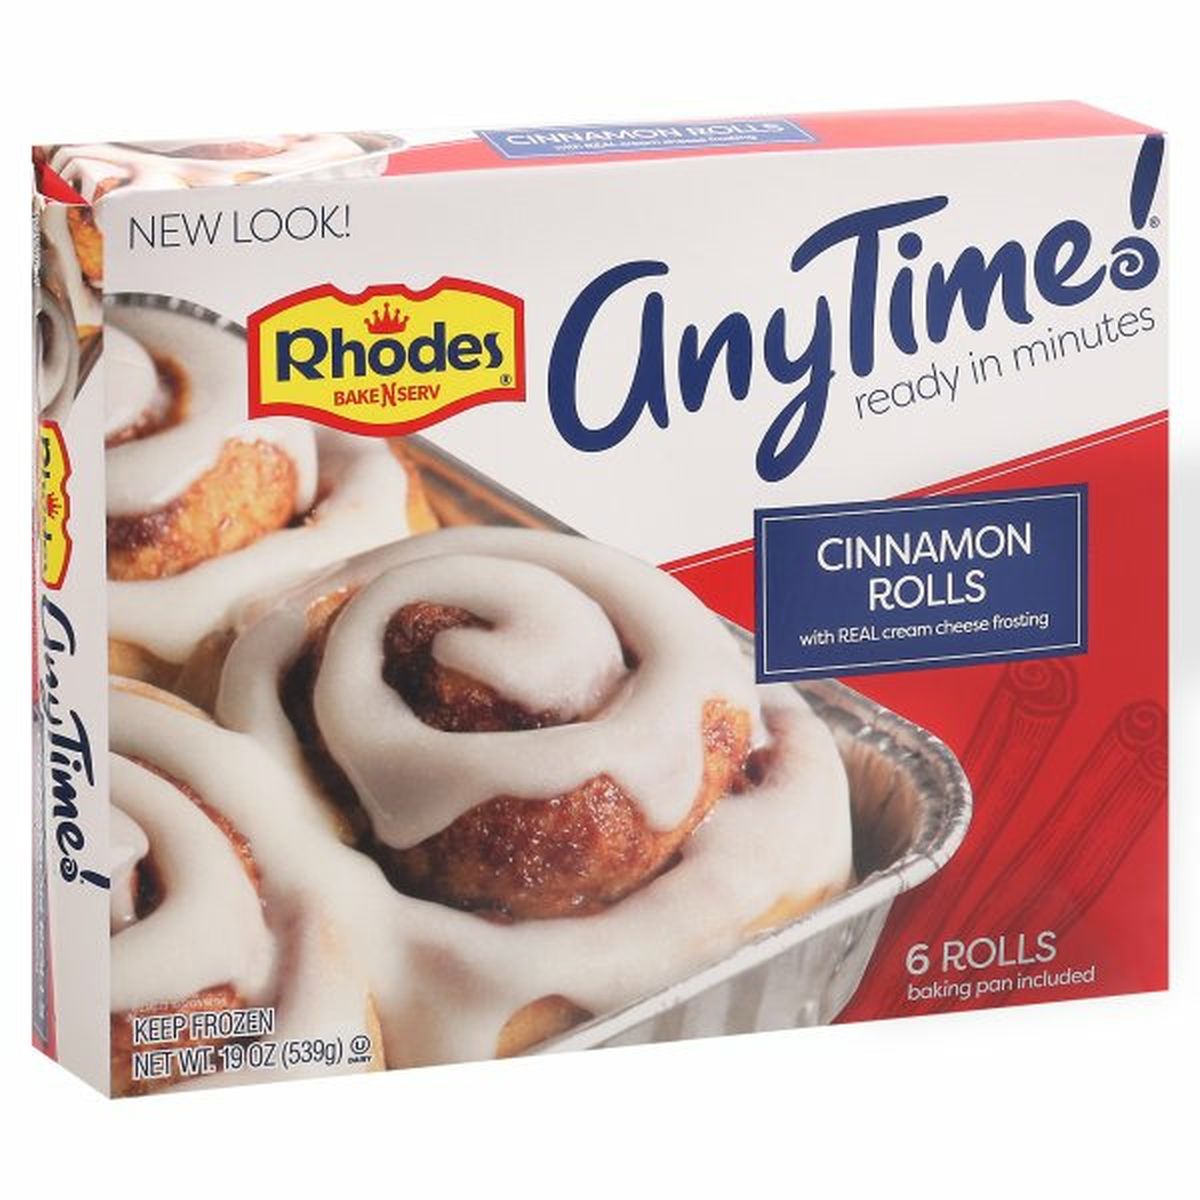 Calories in Rhodes Bake-N-Serv AnyTime! Cinnamon Rolls